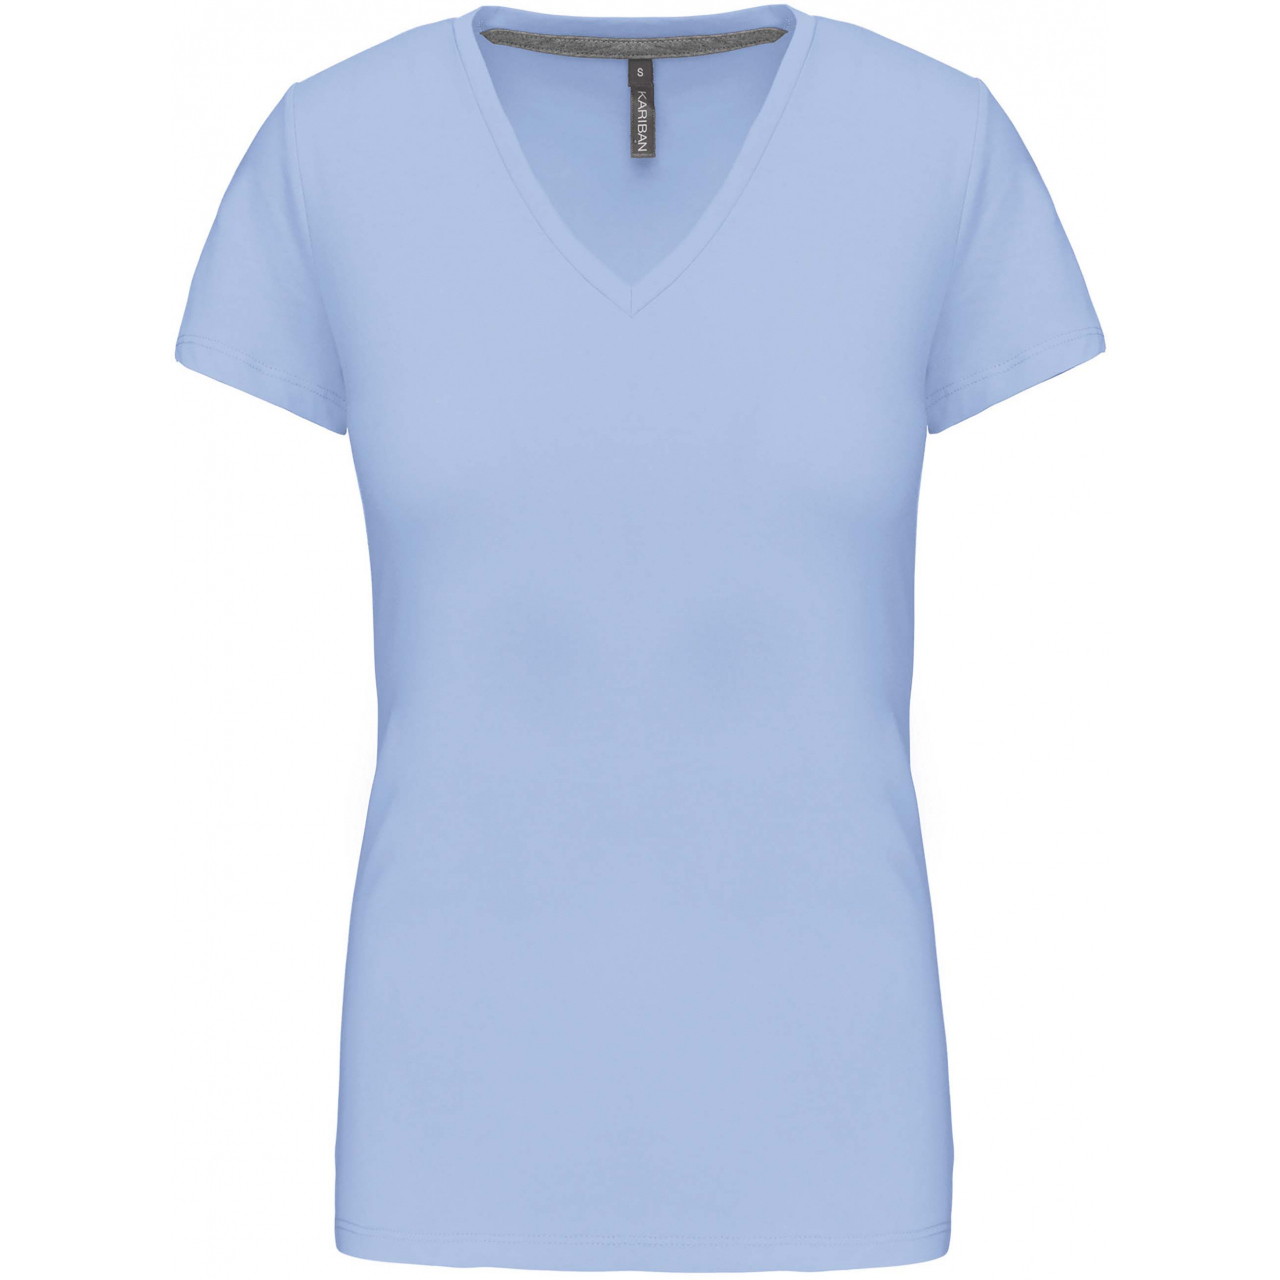 Dámské tričko Kariban V-neck s krátkým rukávem - světle modré, XL